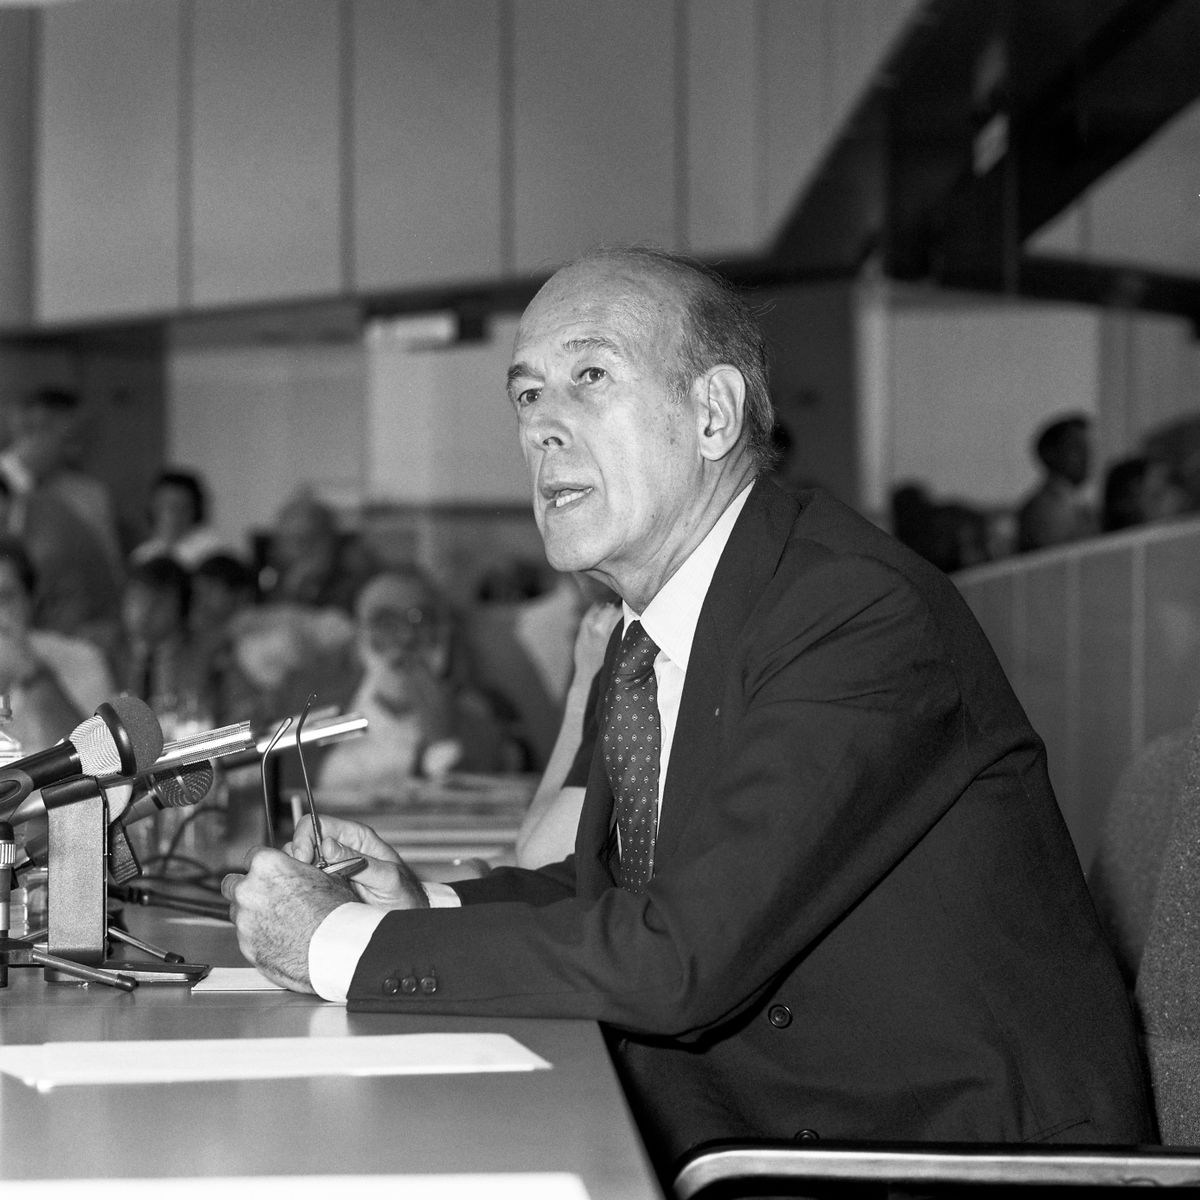 Валери Жискар д'Эстен, экс-президент Франции, избранный в Европарламент в 1989 году, на пресс-конференции пленарного заседания в Страсбурге. Пройдя в парламент, он взял на себя руководство фракцией либералов и демократов-реформистов.